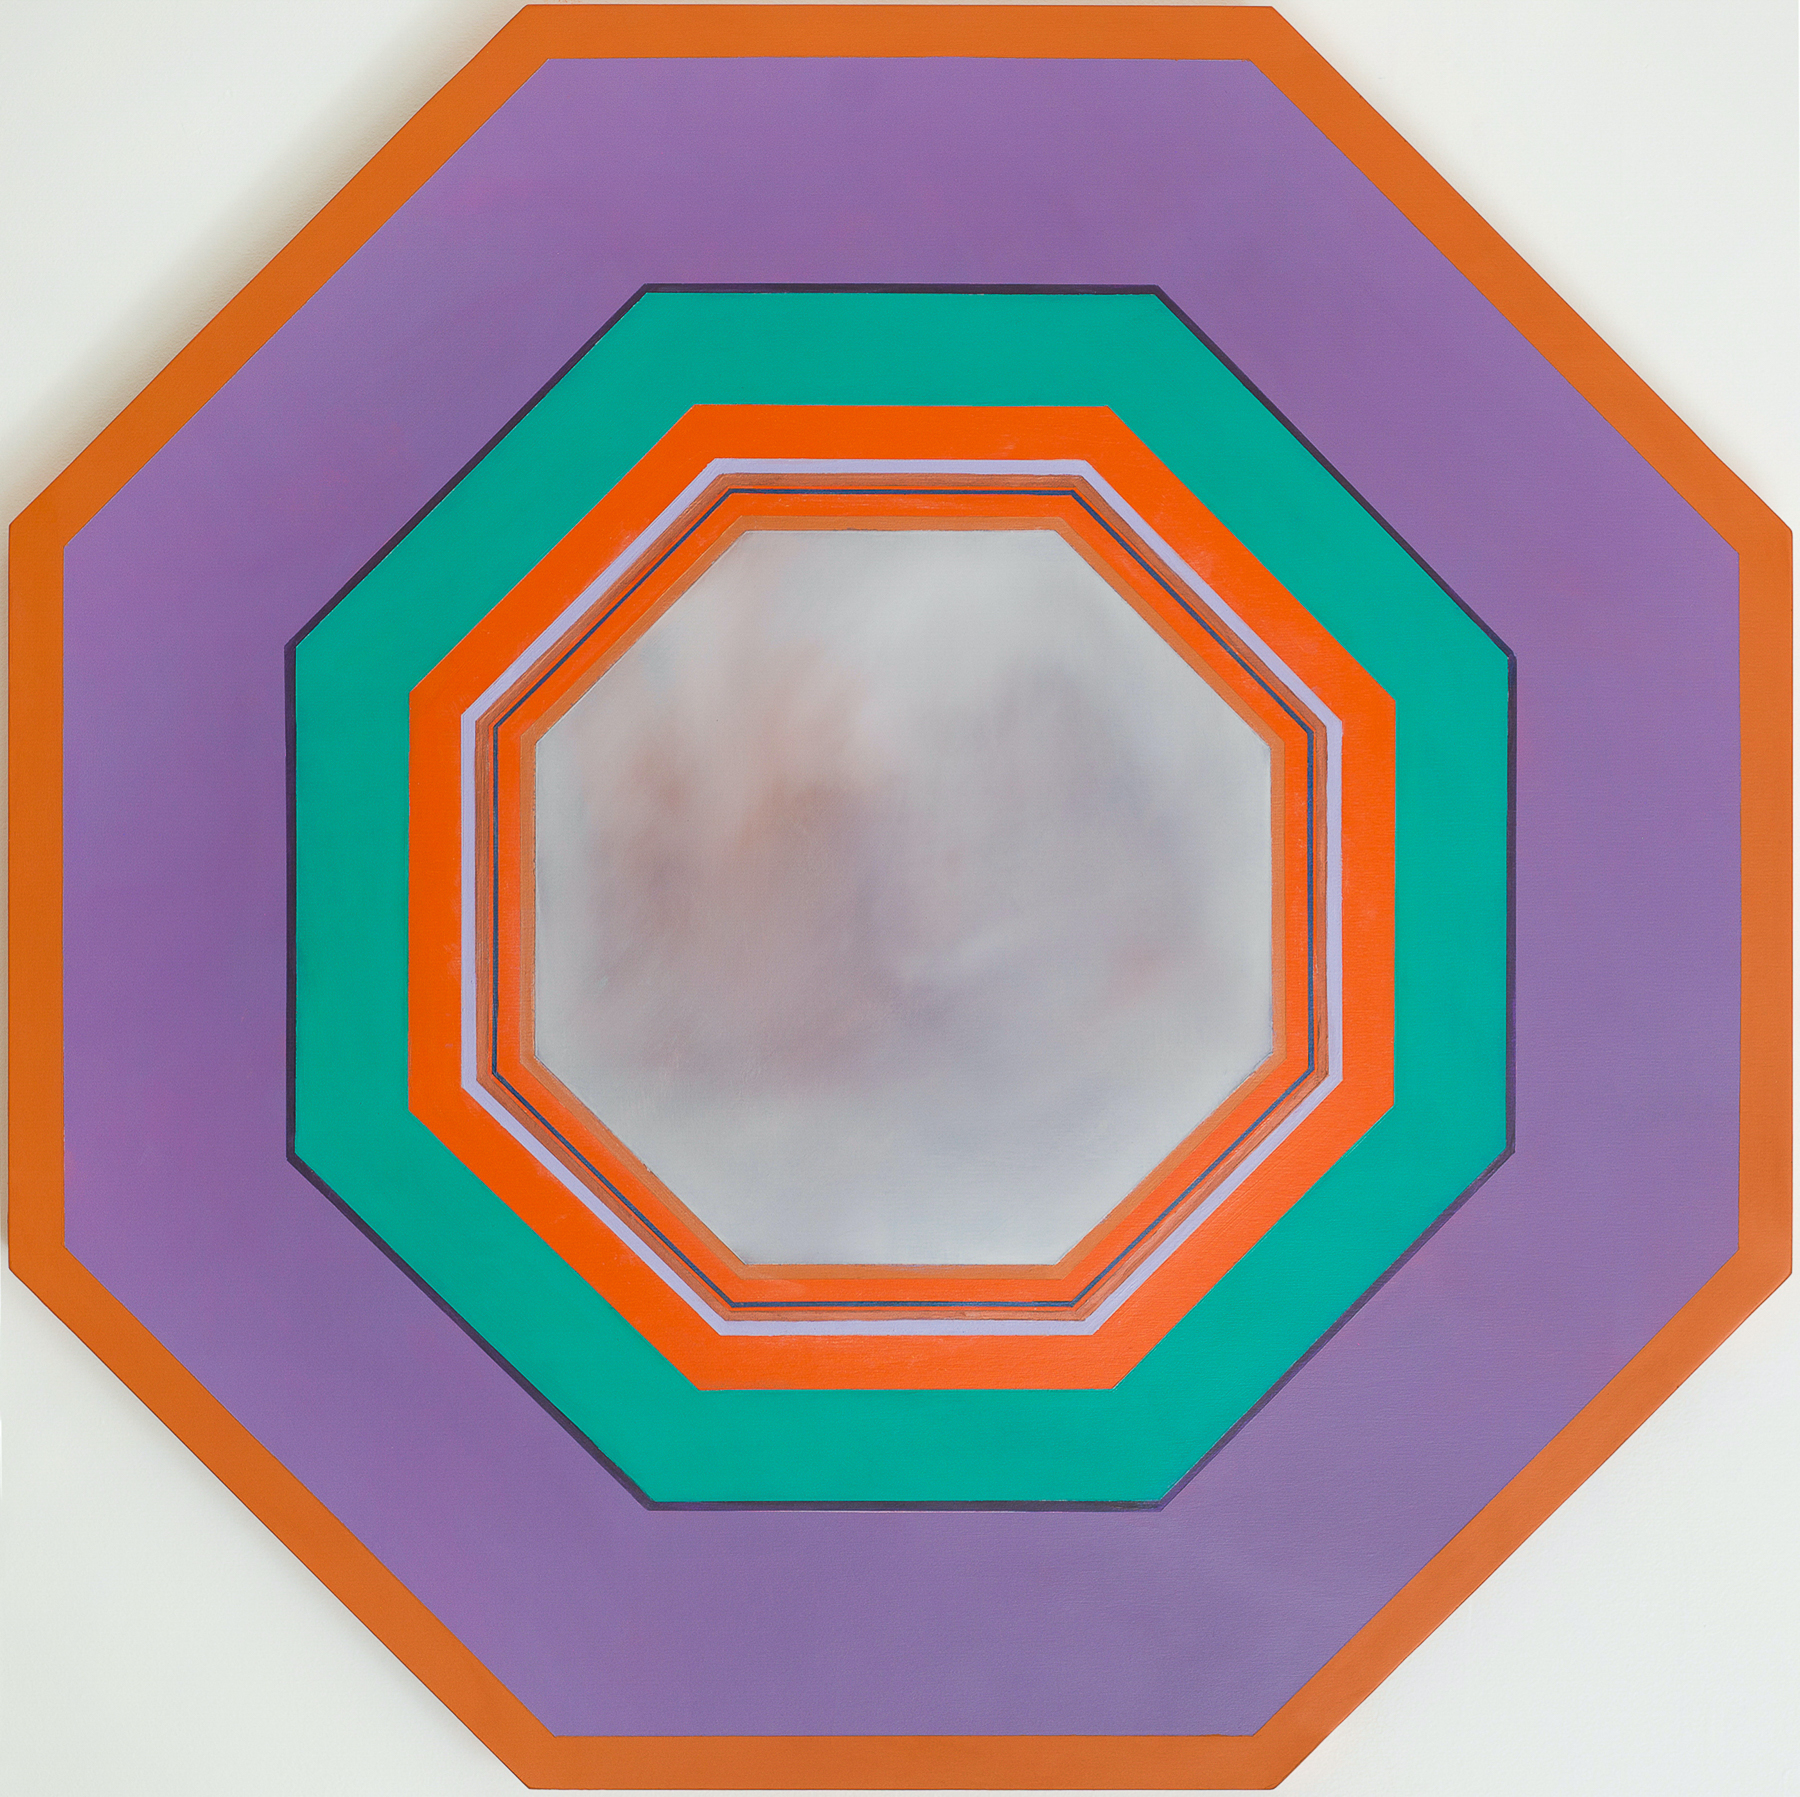 Octagon 3 by Anne Mestitz